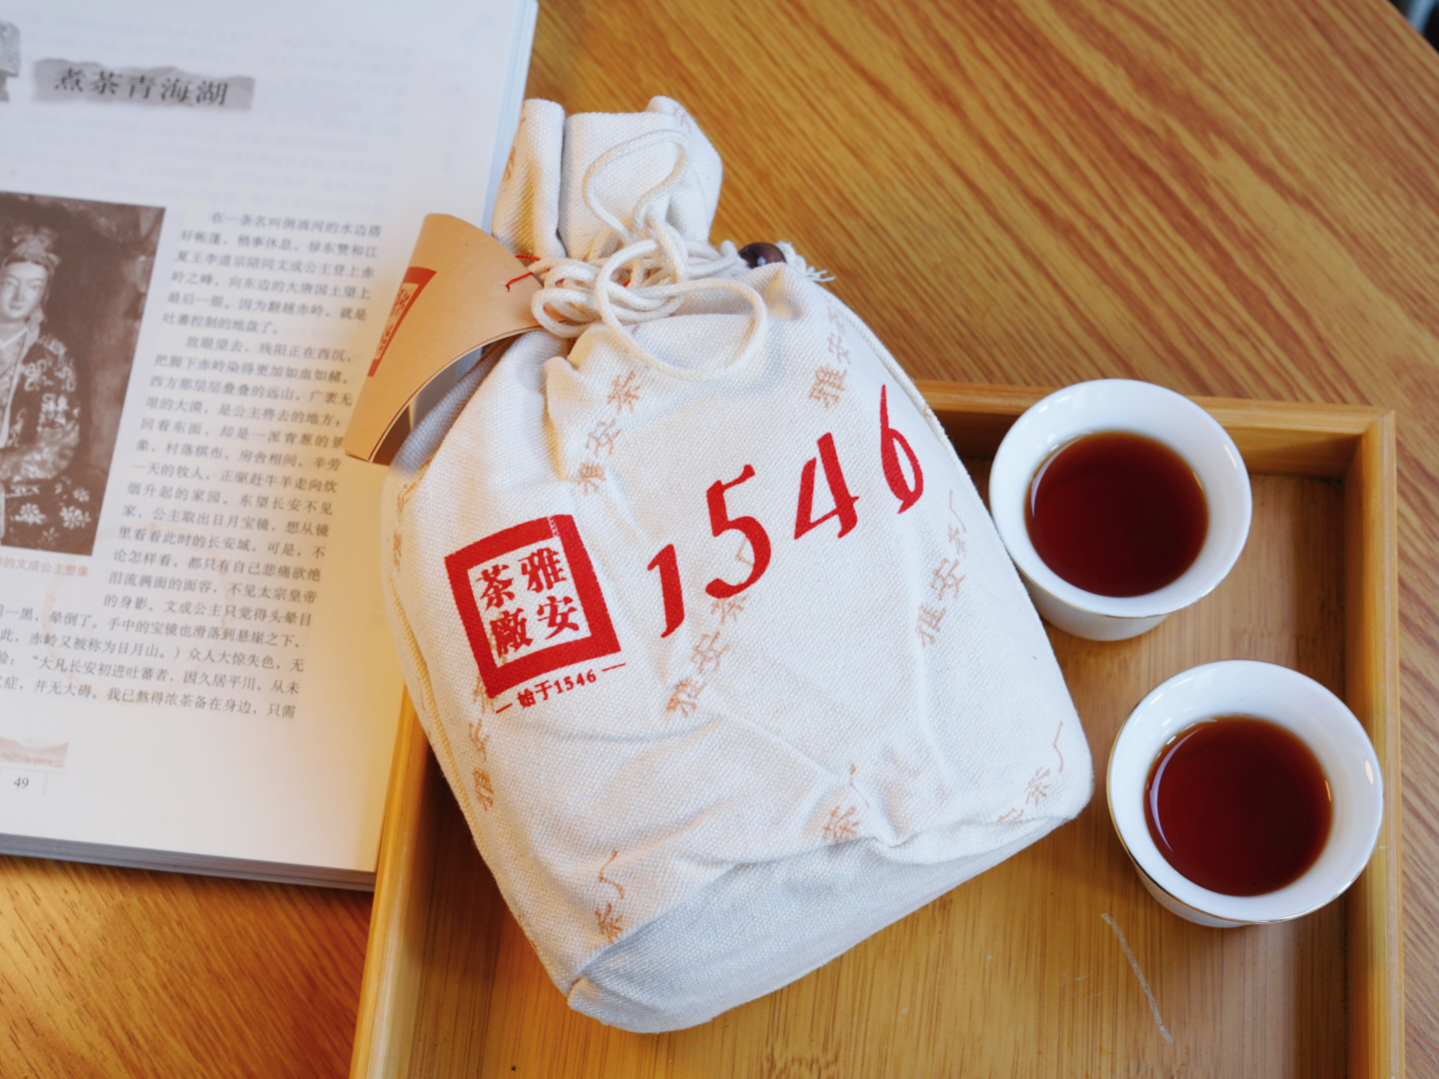 康砖团结布袋散装雅安藏茶黑茶 四川雅安茶厂直营南路边茶250g